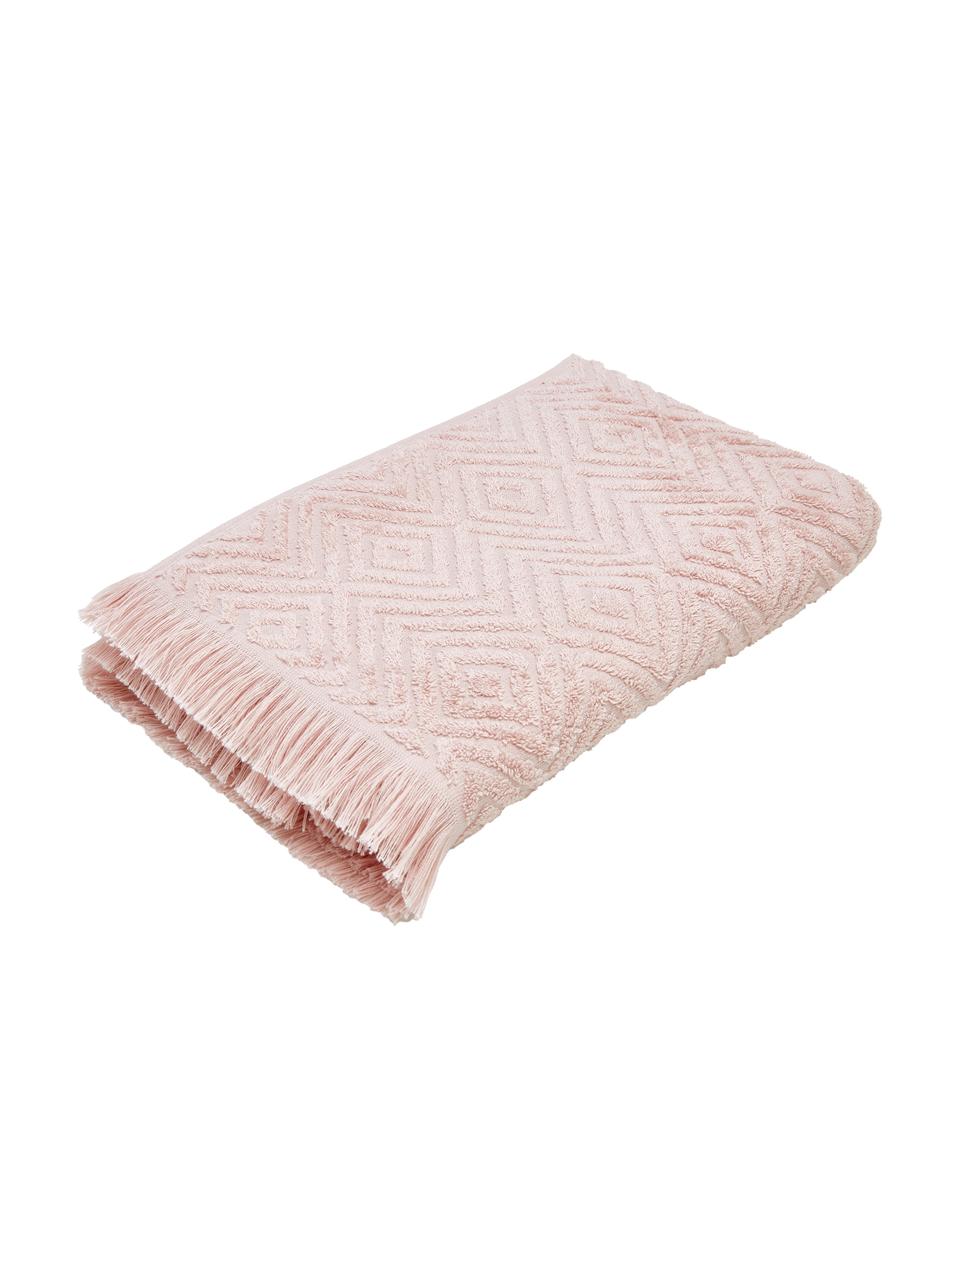 Handtuch Jacqui in verschiedenen Größen, mit Hoch-Tief-Muster, Rosa, Handtuch, B 50 x L 100 cm, 2 Stück